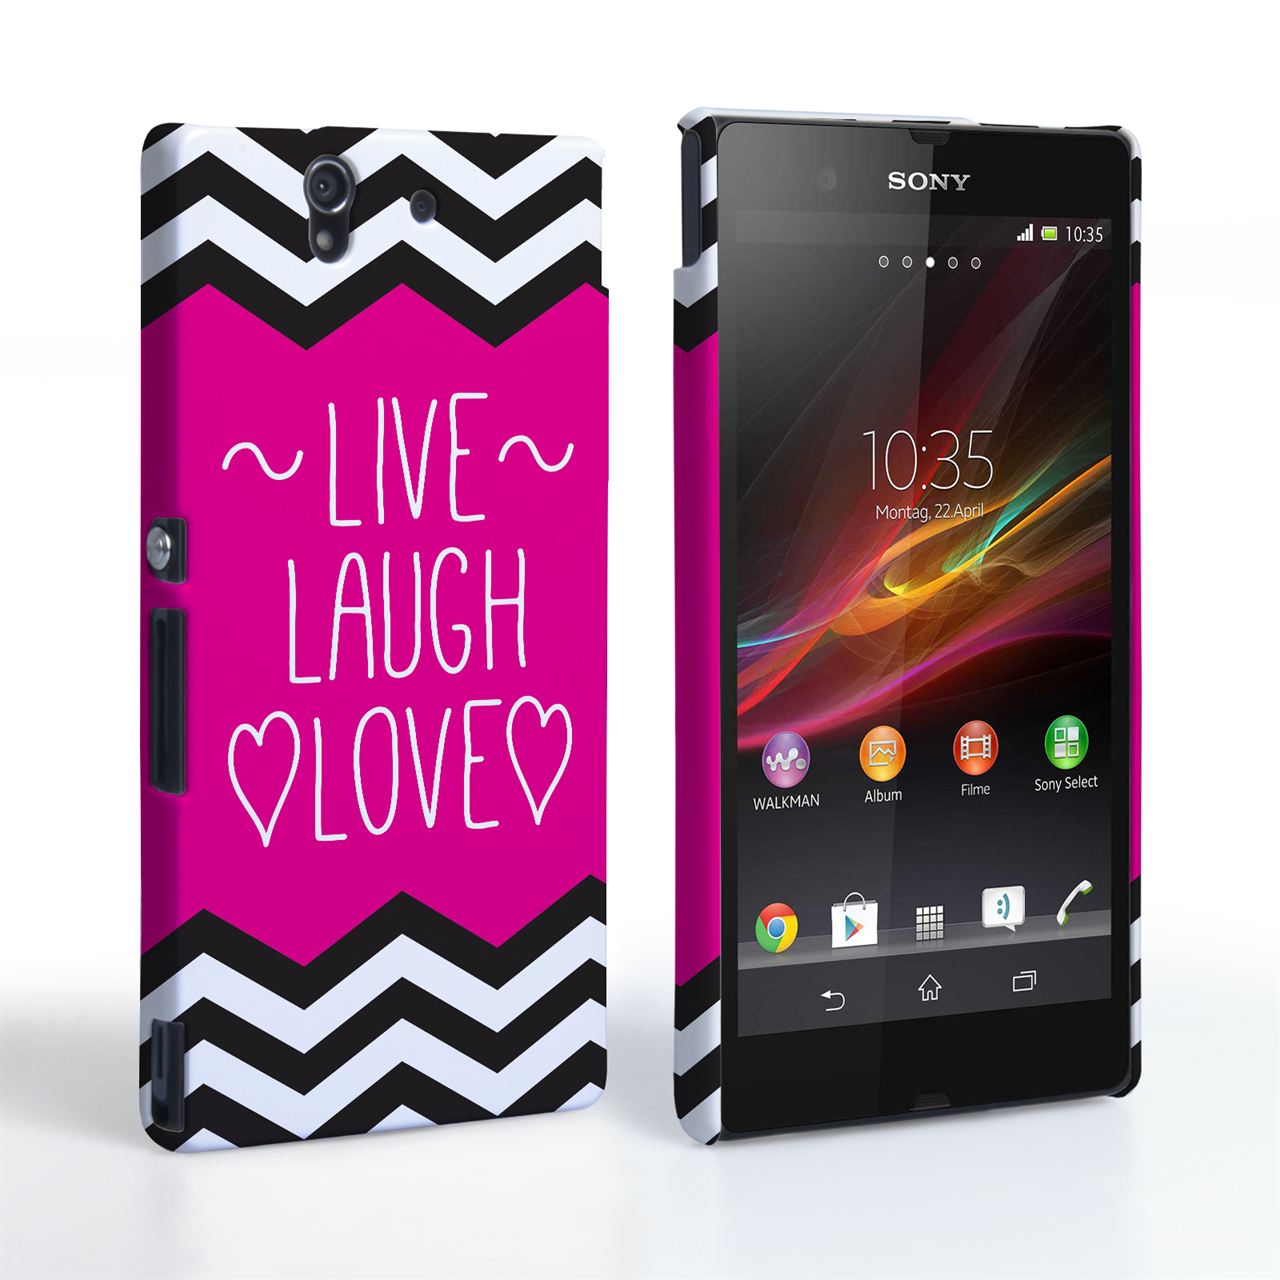 Caseflex Sony Xperia Z Live Laugh Love Heart Case